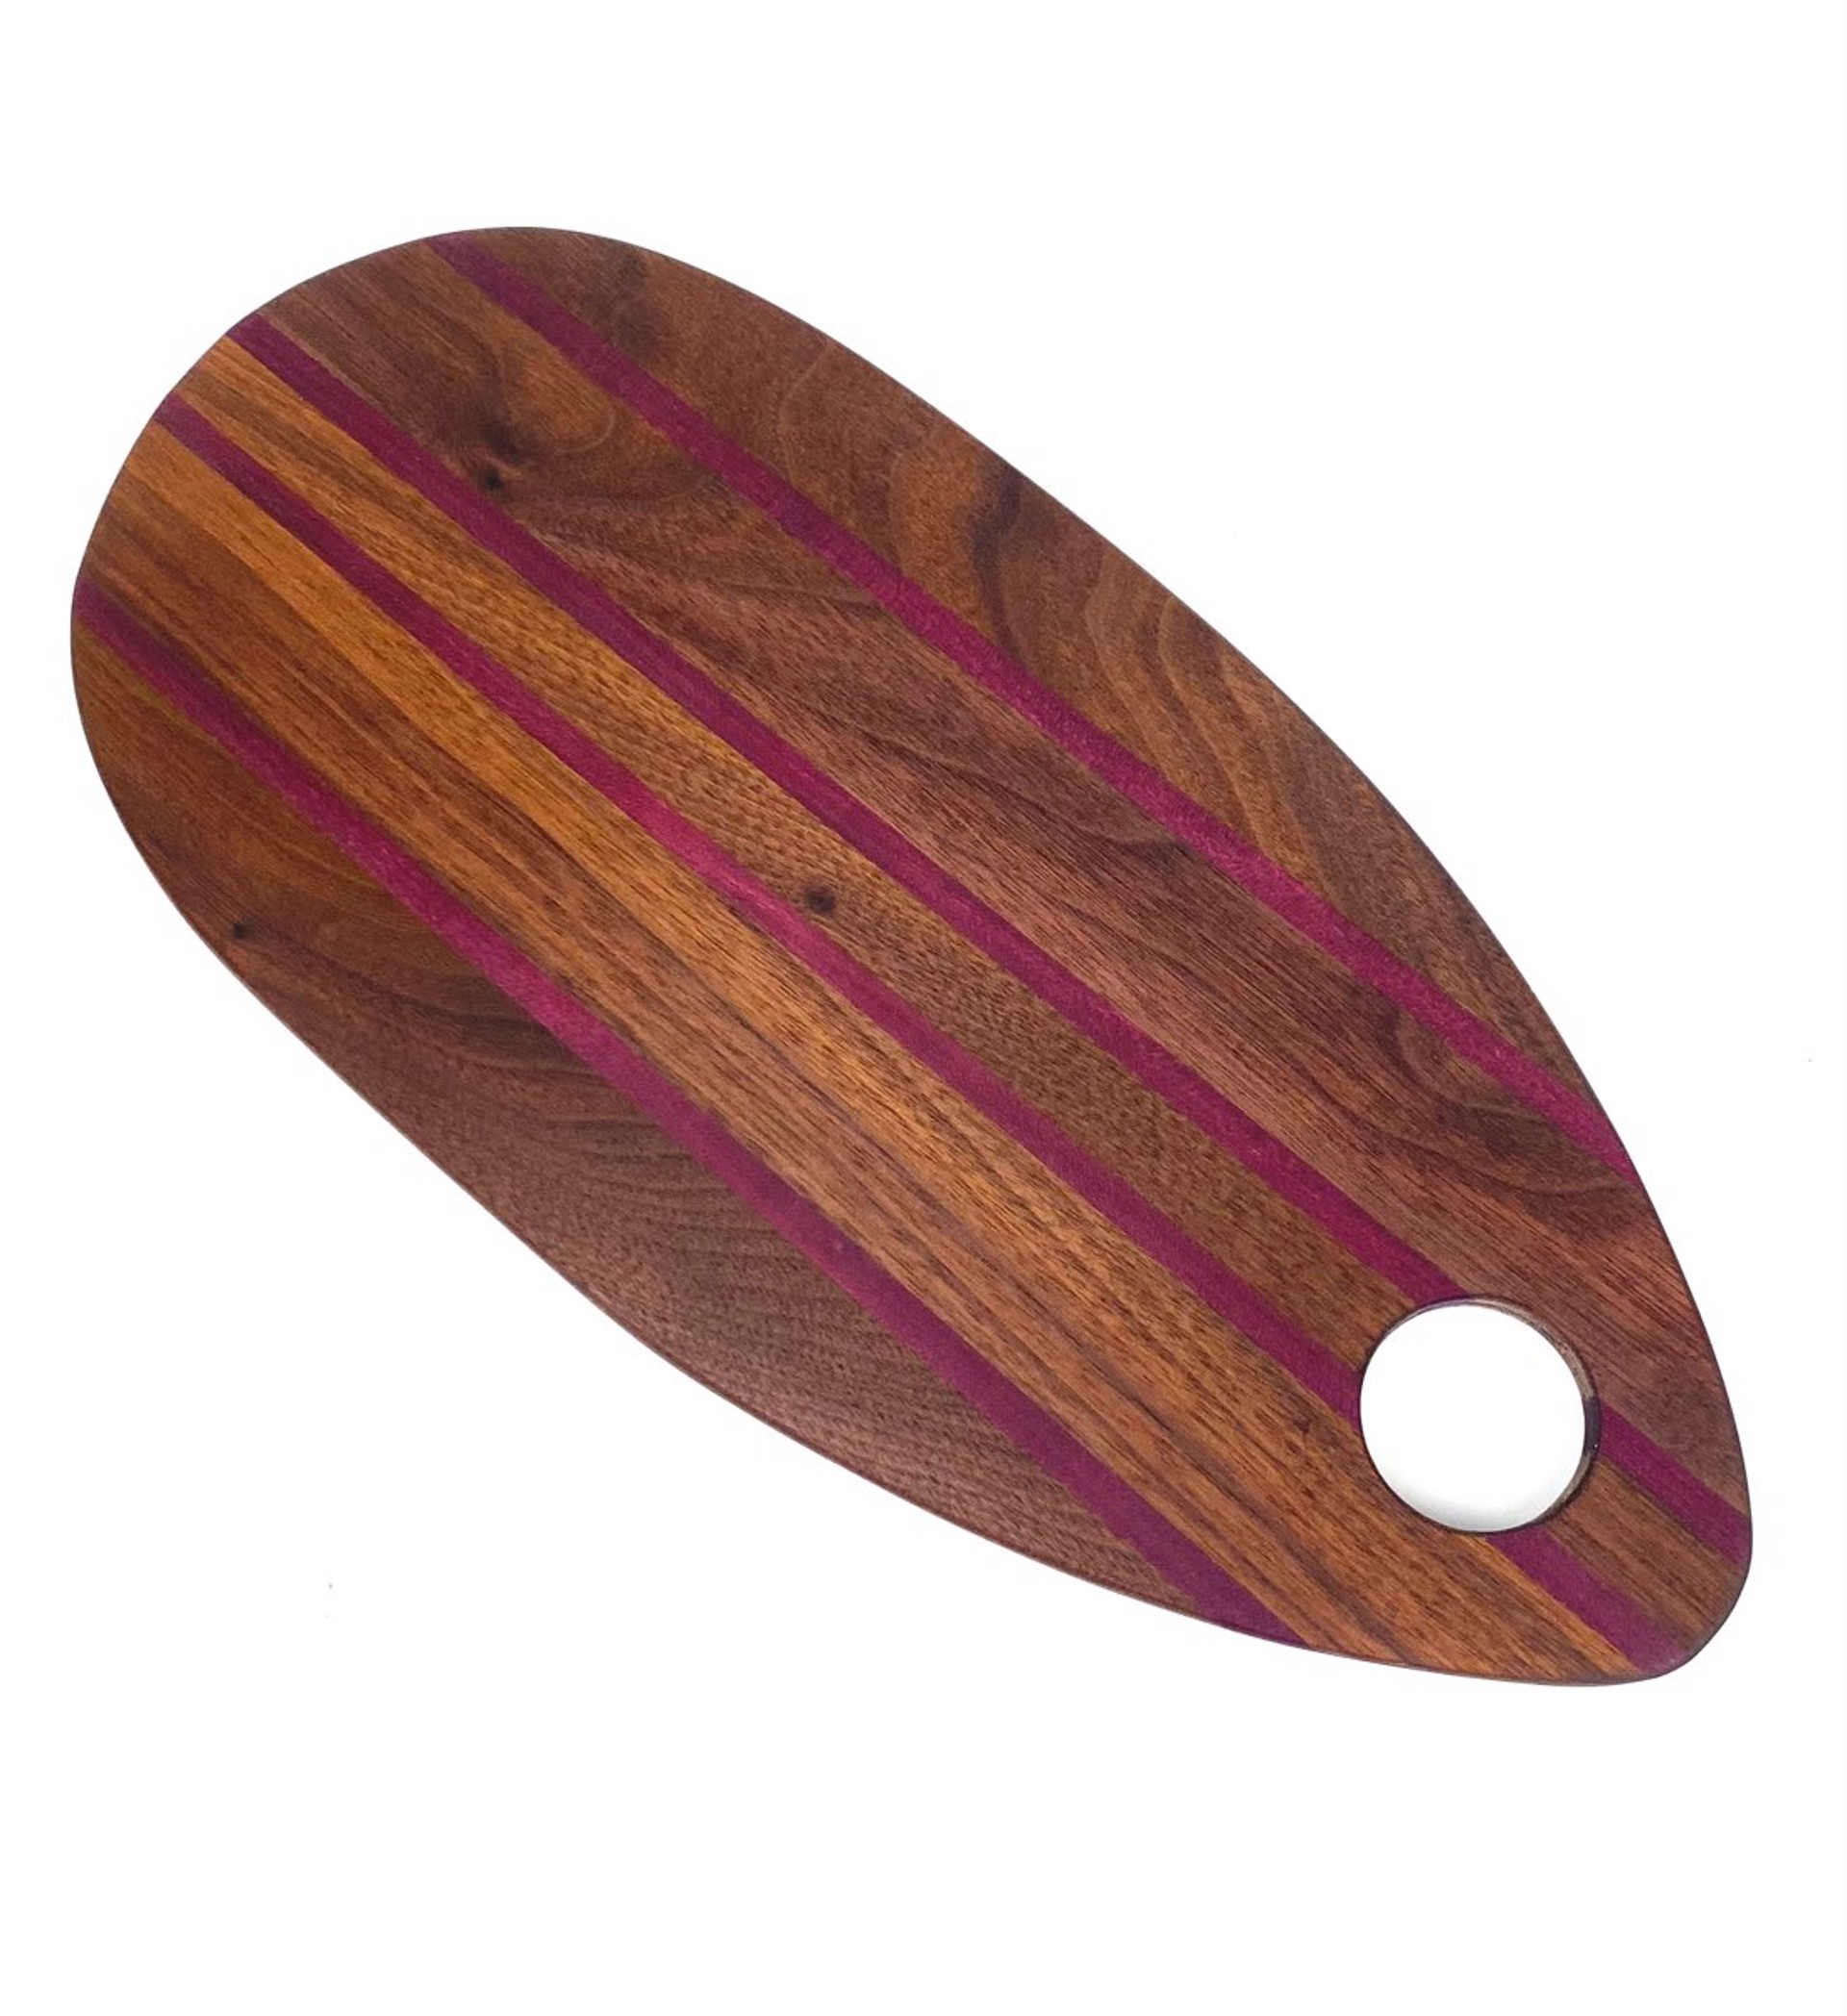 Walnut and Purple Wood Oval Board by Jon Cordes